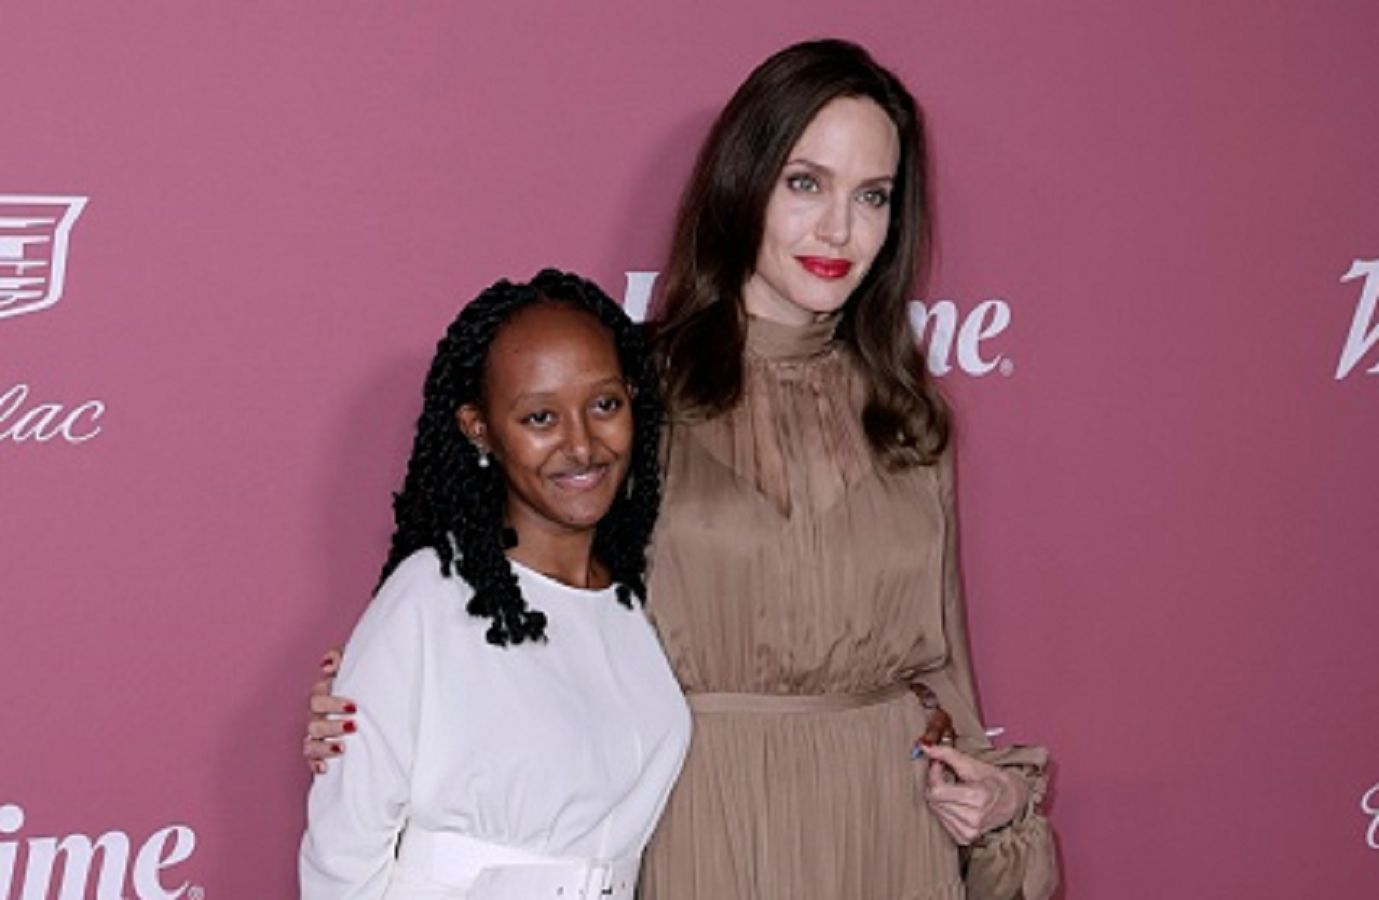 Angelina Jolie oszukana podczas adopcji. Kłamstwo wyszło na jaw